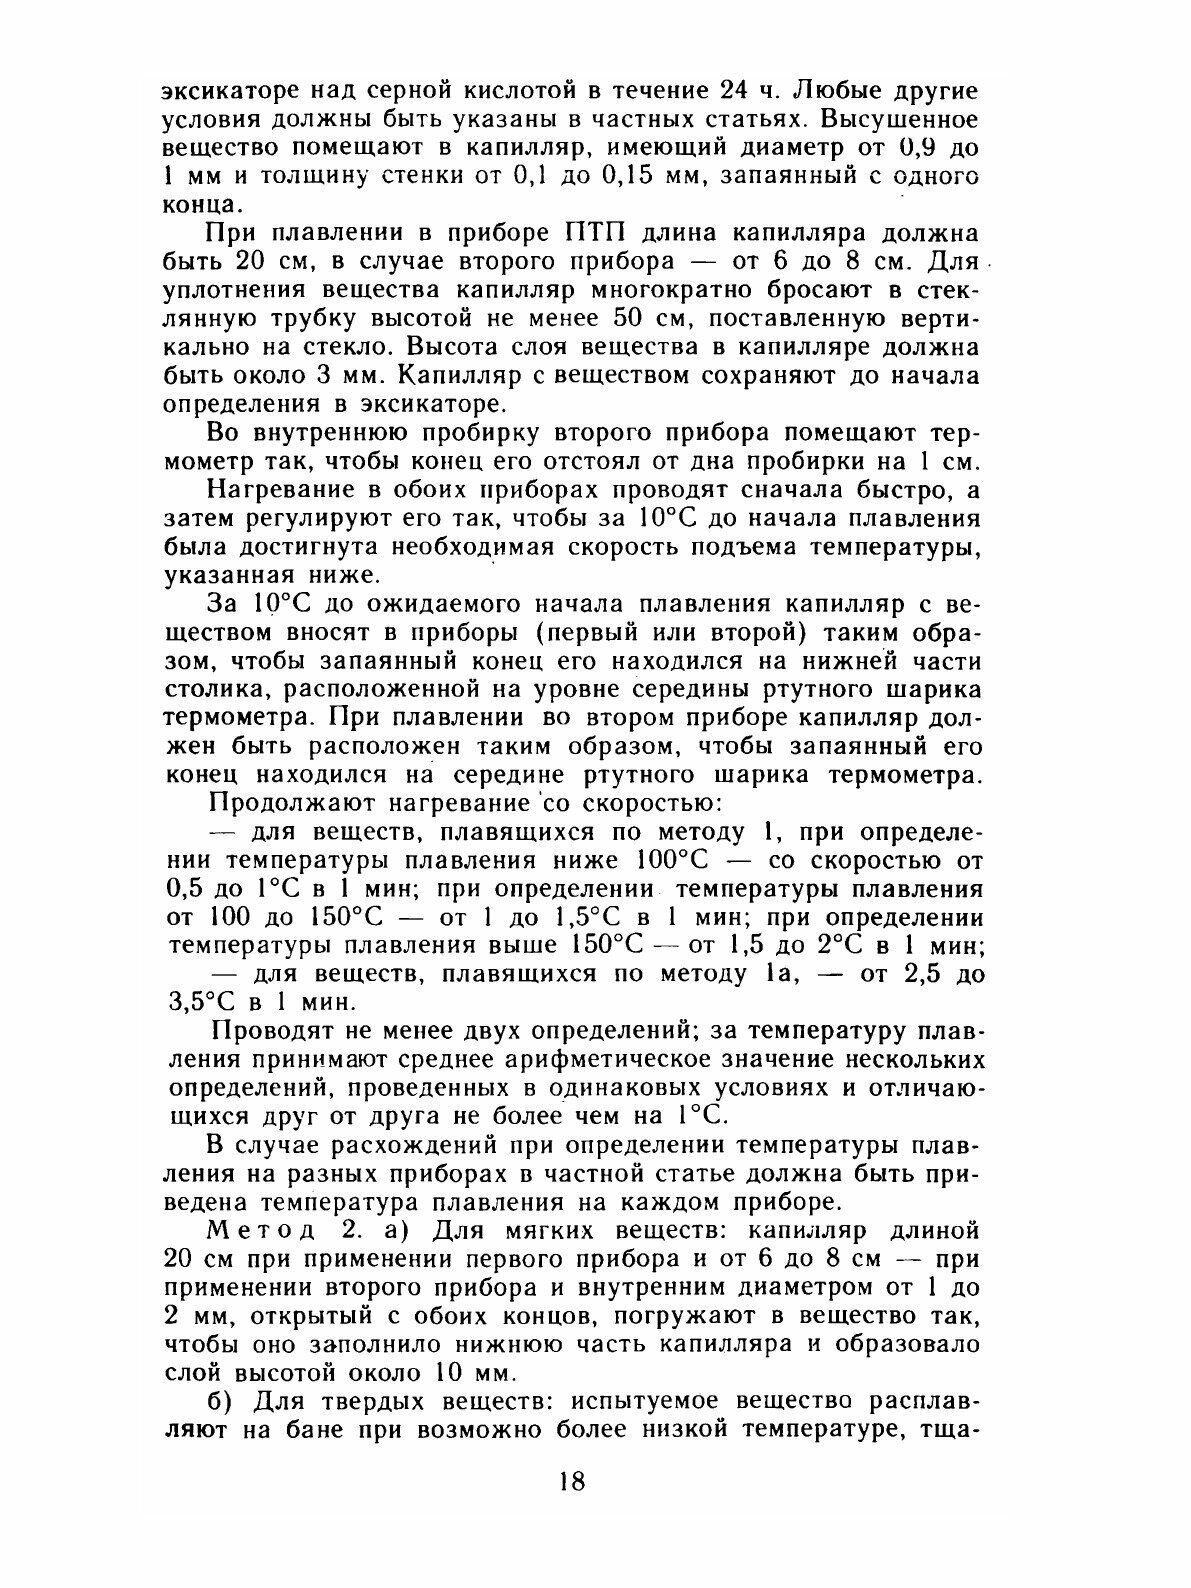 Государственная фармакопея СССР. XI издание. Выпуск 1 - фото №6